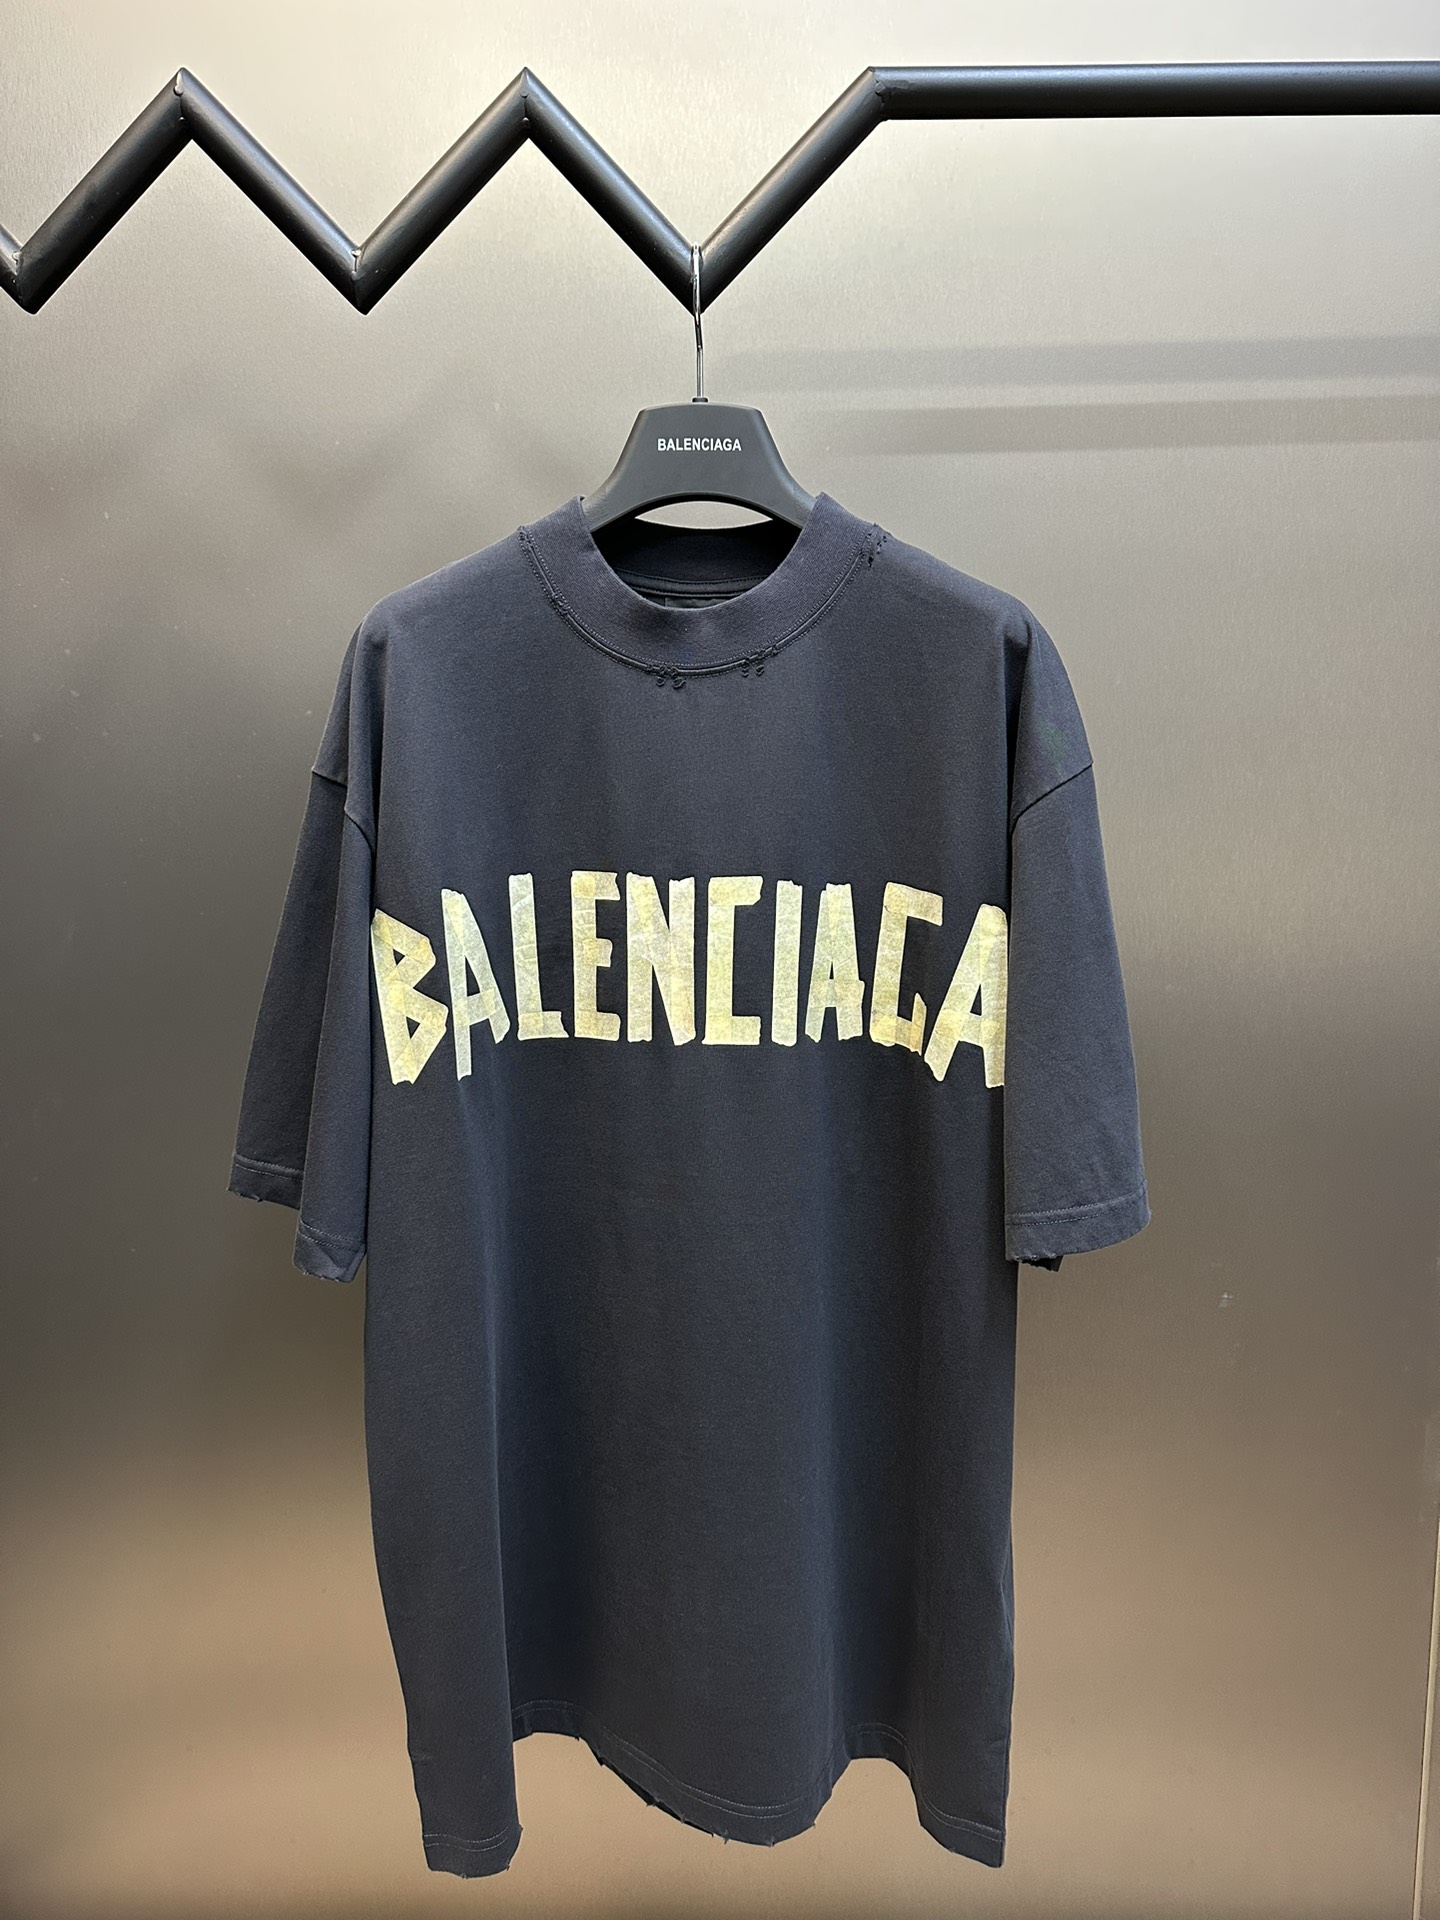 Balenciaga Clothing T-Shirt Black Grey Yellow Printing Combed Cotton Short Sleeve